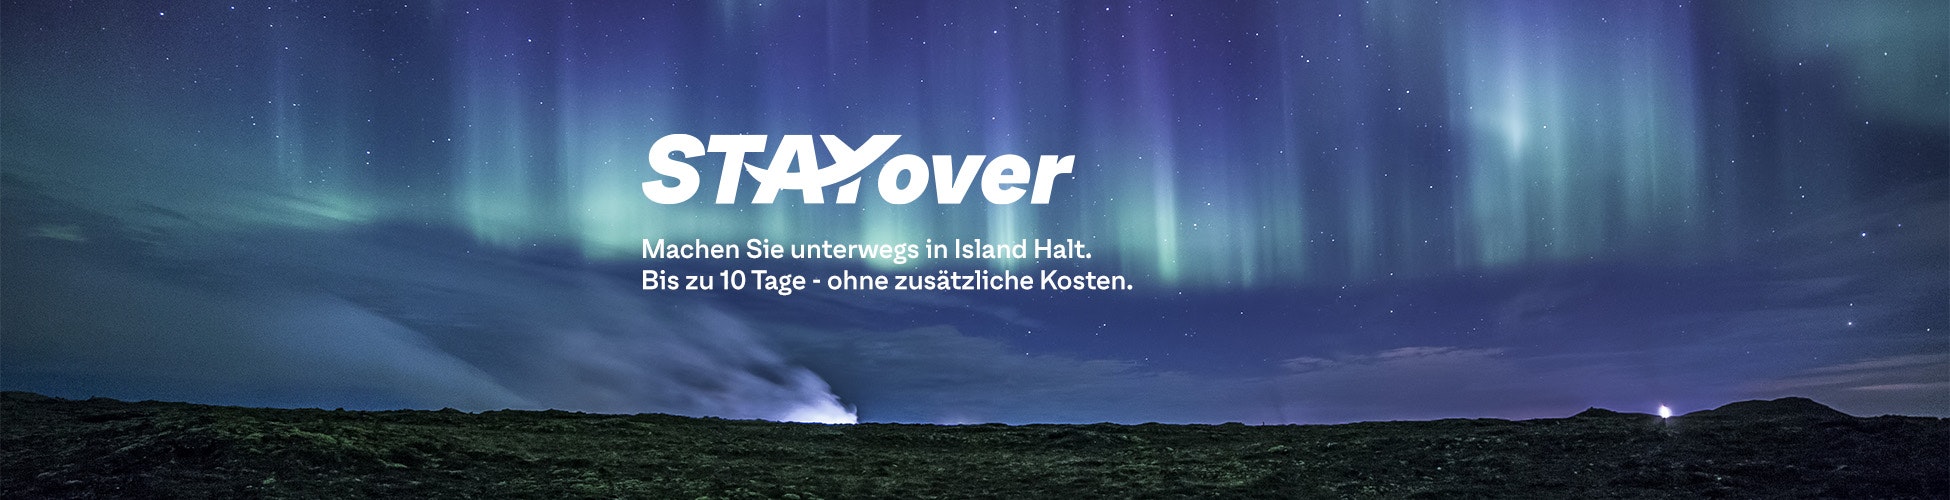 "Stayover - Machen Sie unterwegs in Island Halt. Bis zu 10 Tage - ohne zusätzliche Kosten."